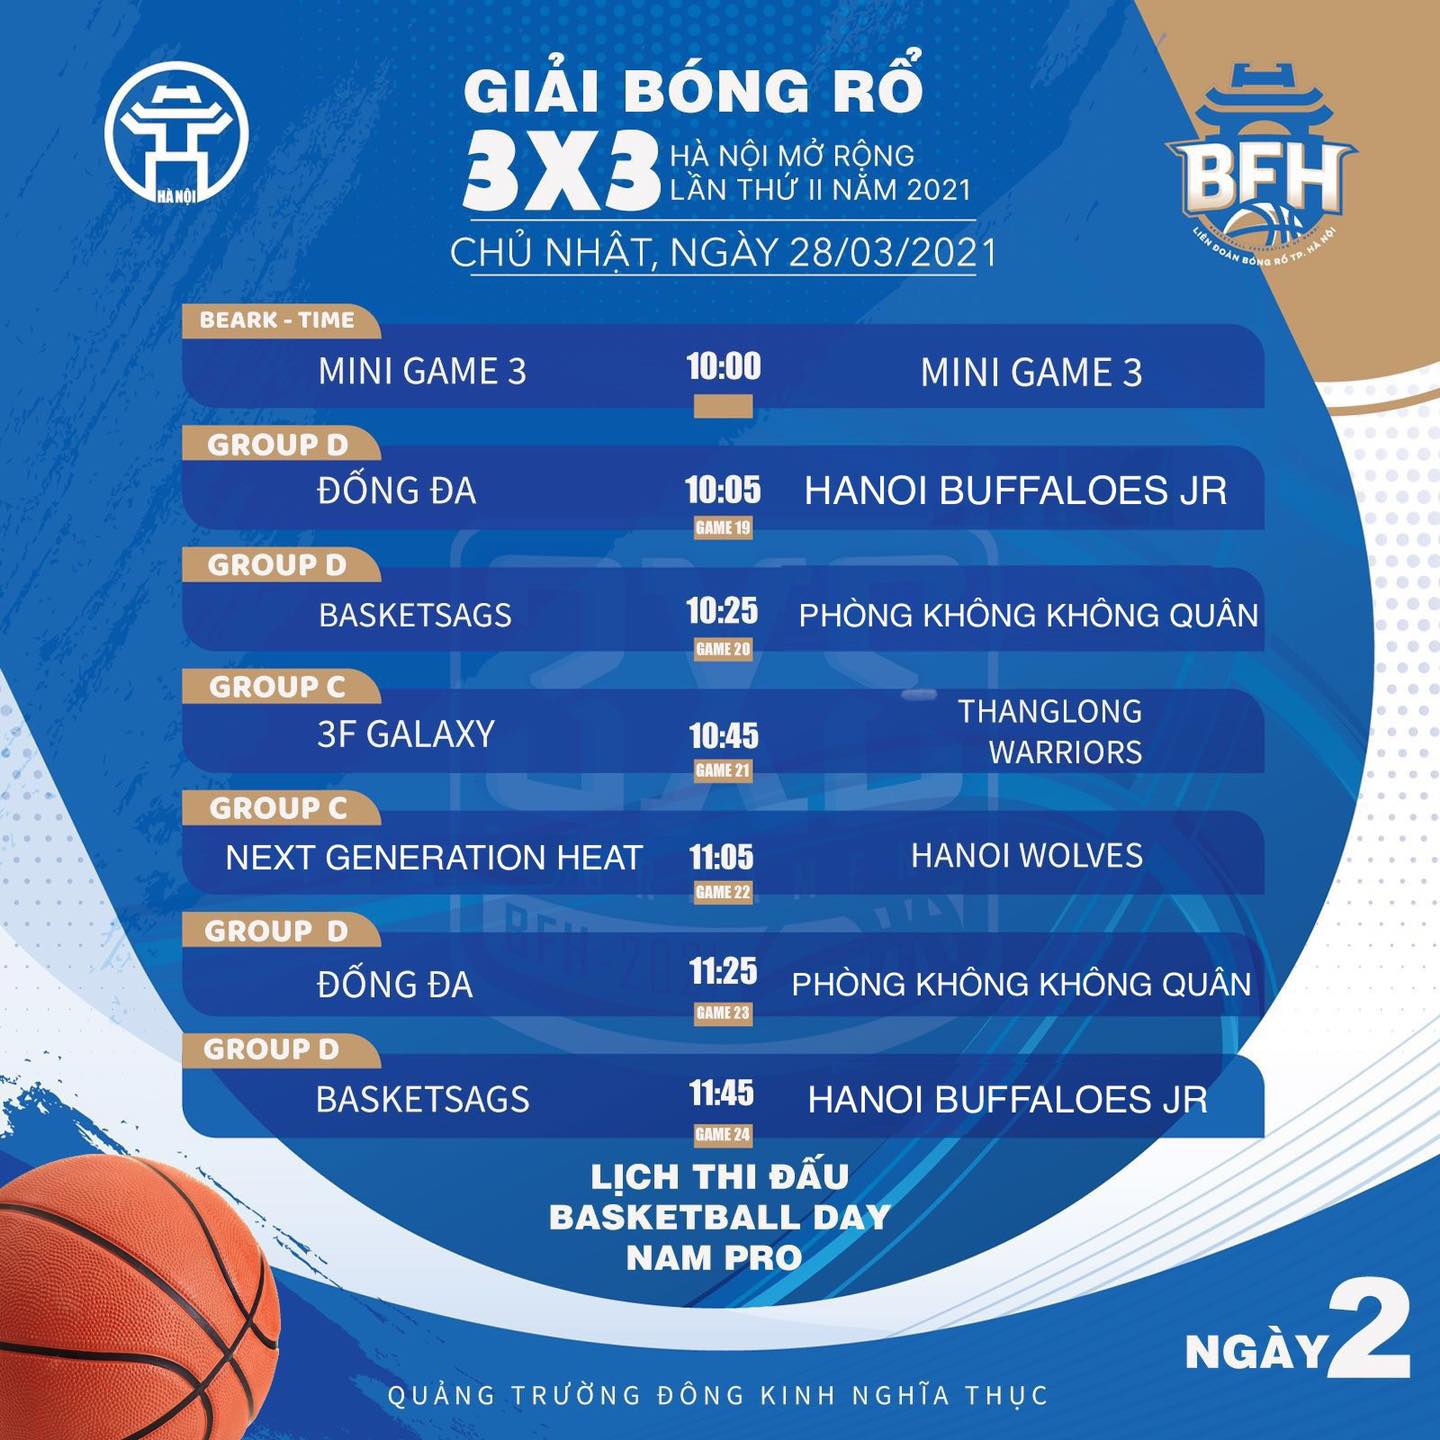 Lịch thi đấu giải bóng rổ 3x3 Hà Nội mở rộng lần 2 năm 2021 - Ảnh 7